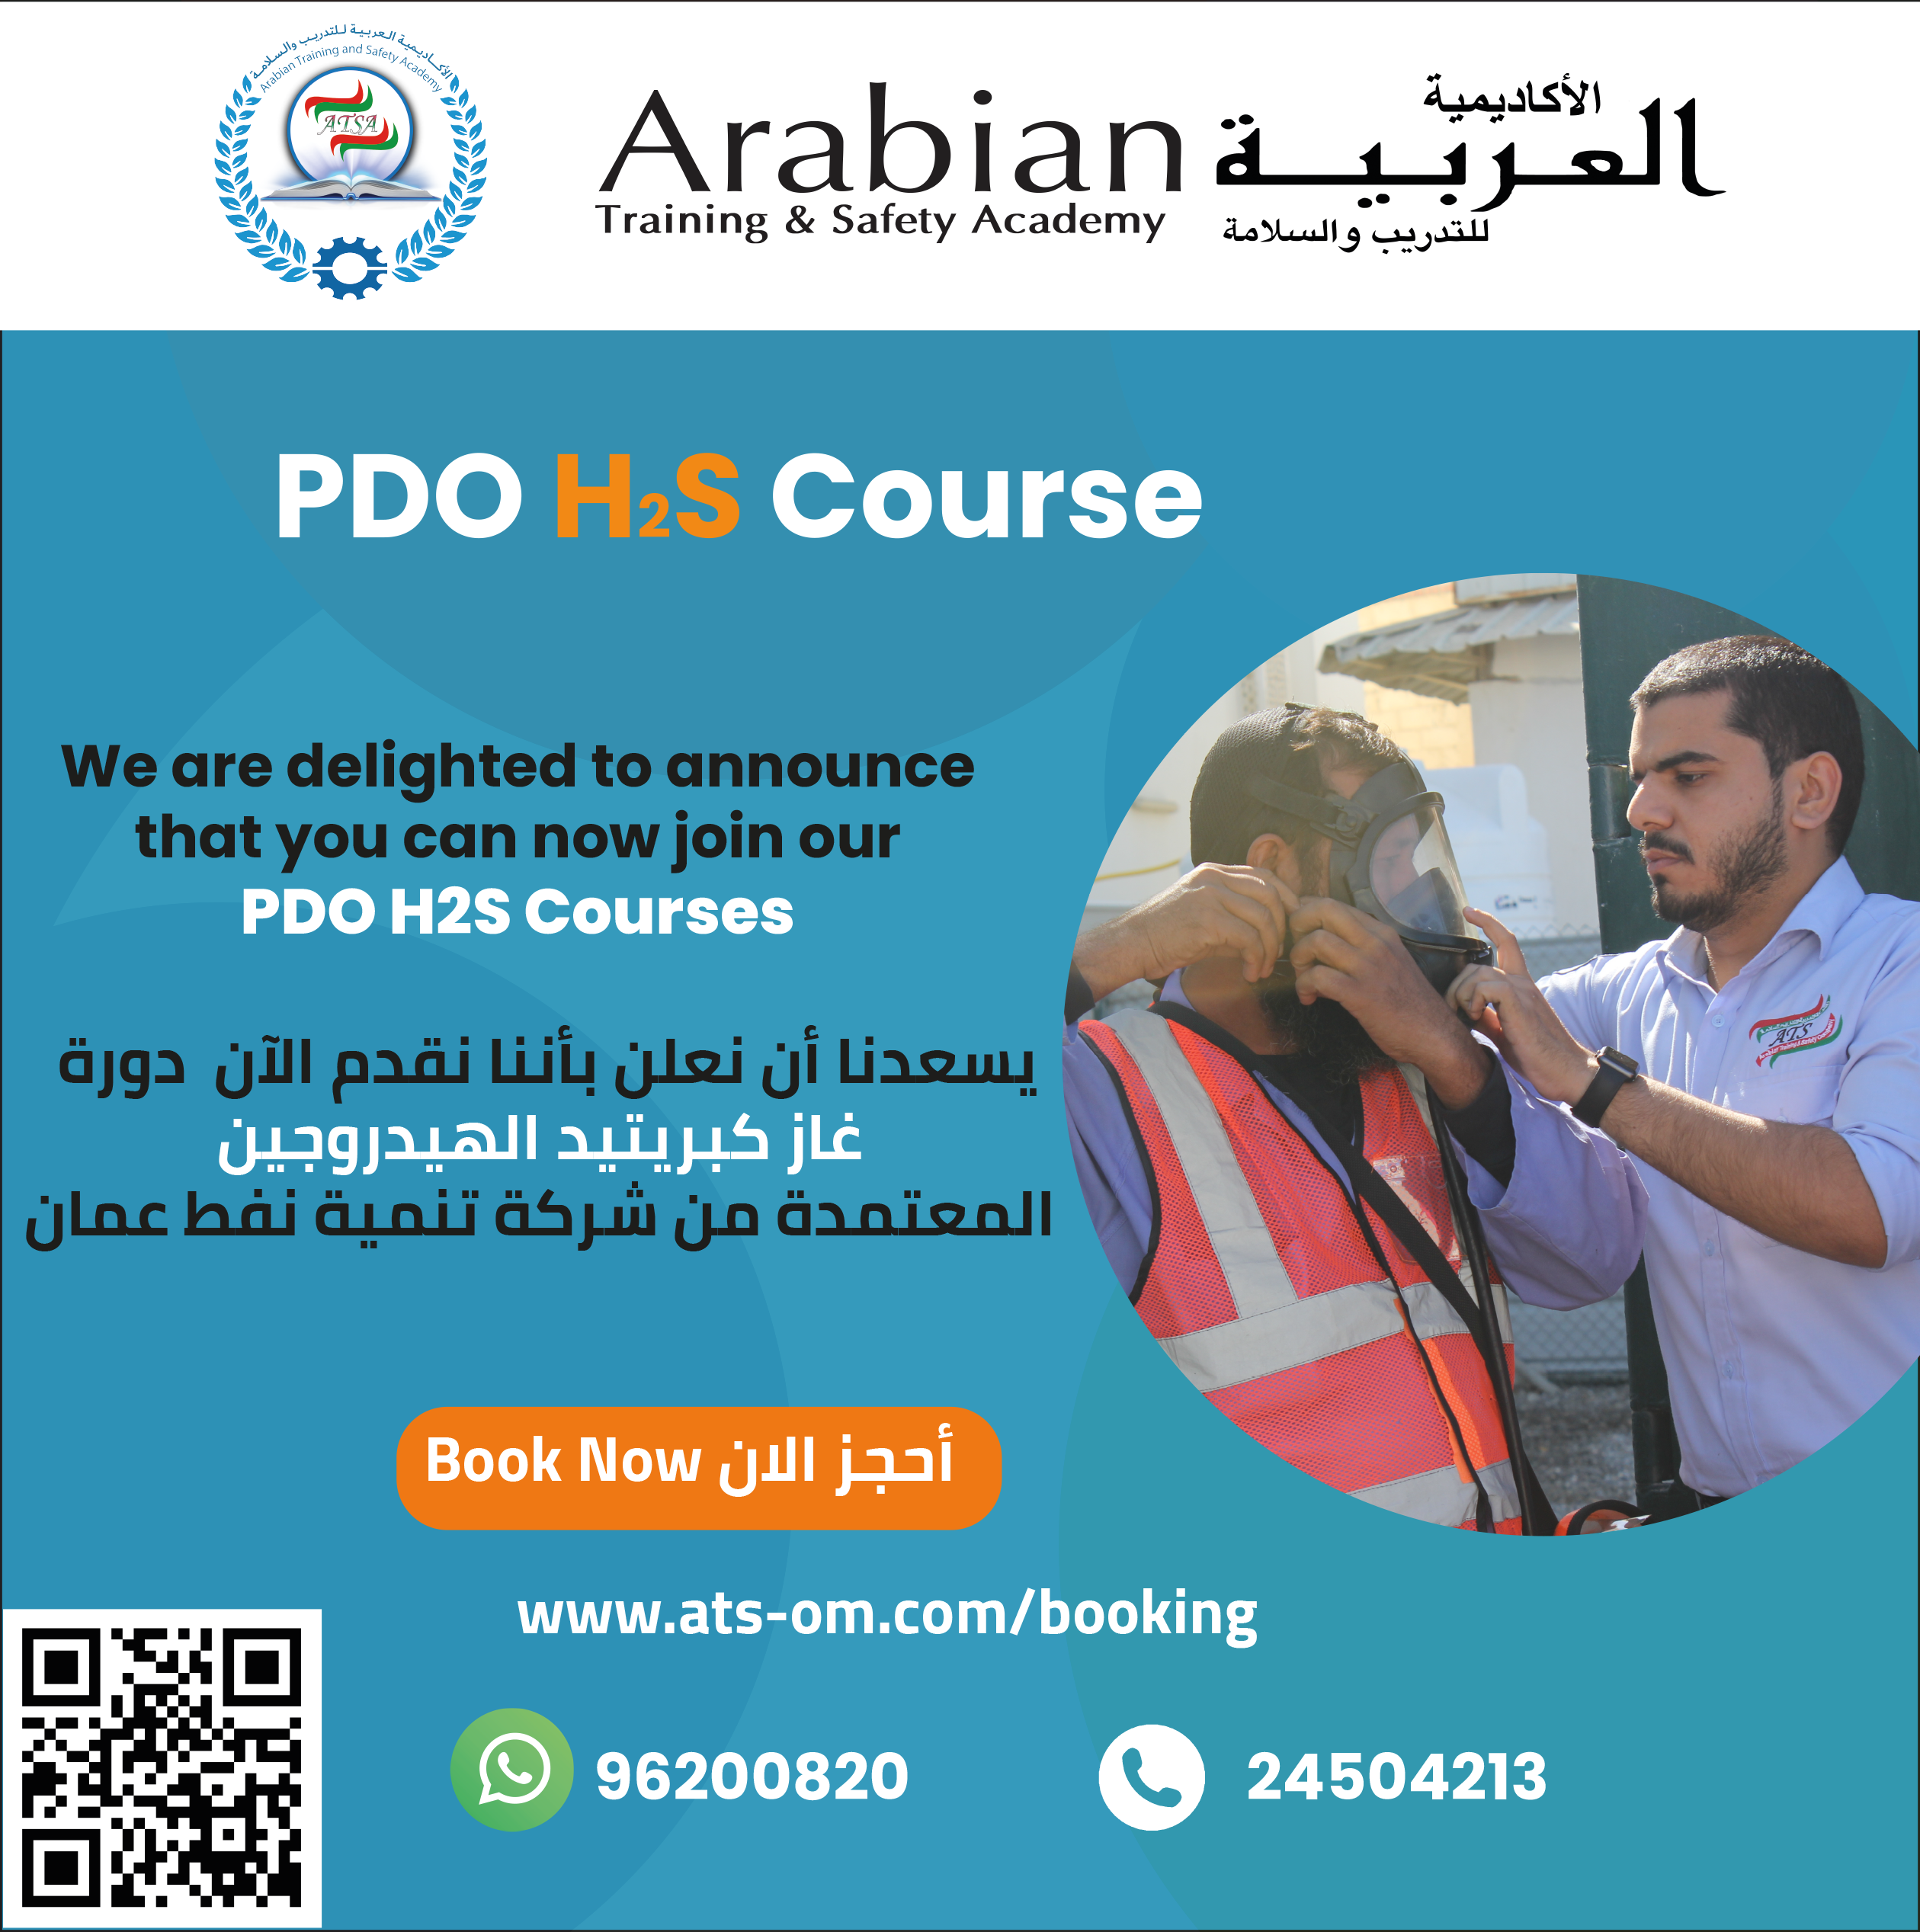 PDO H2S Courses